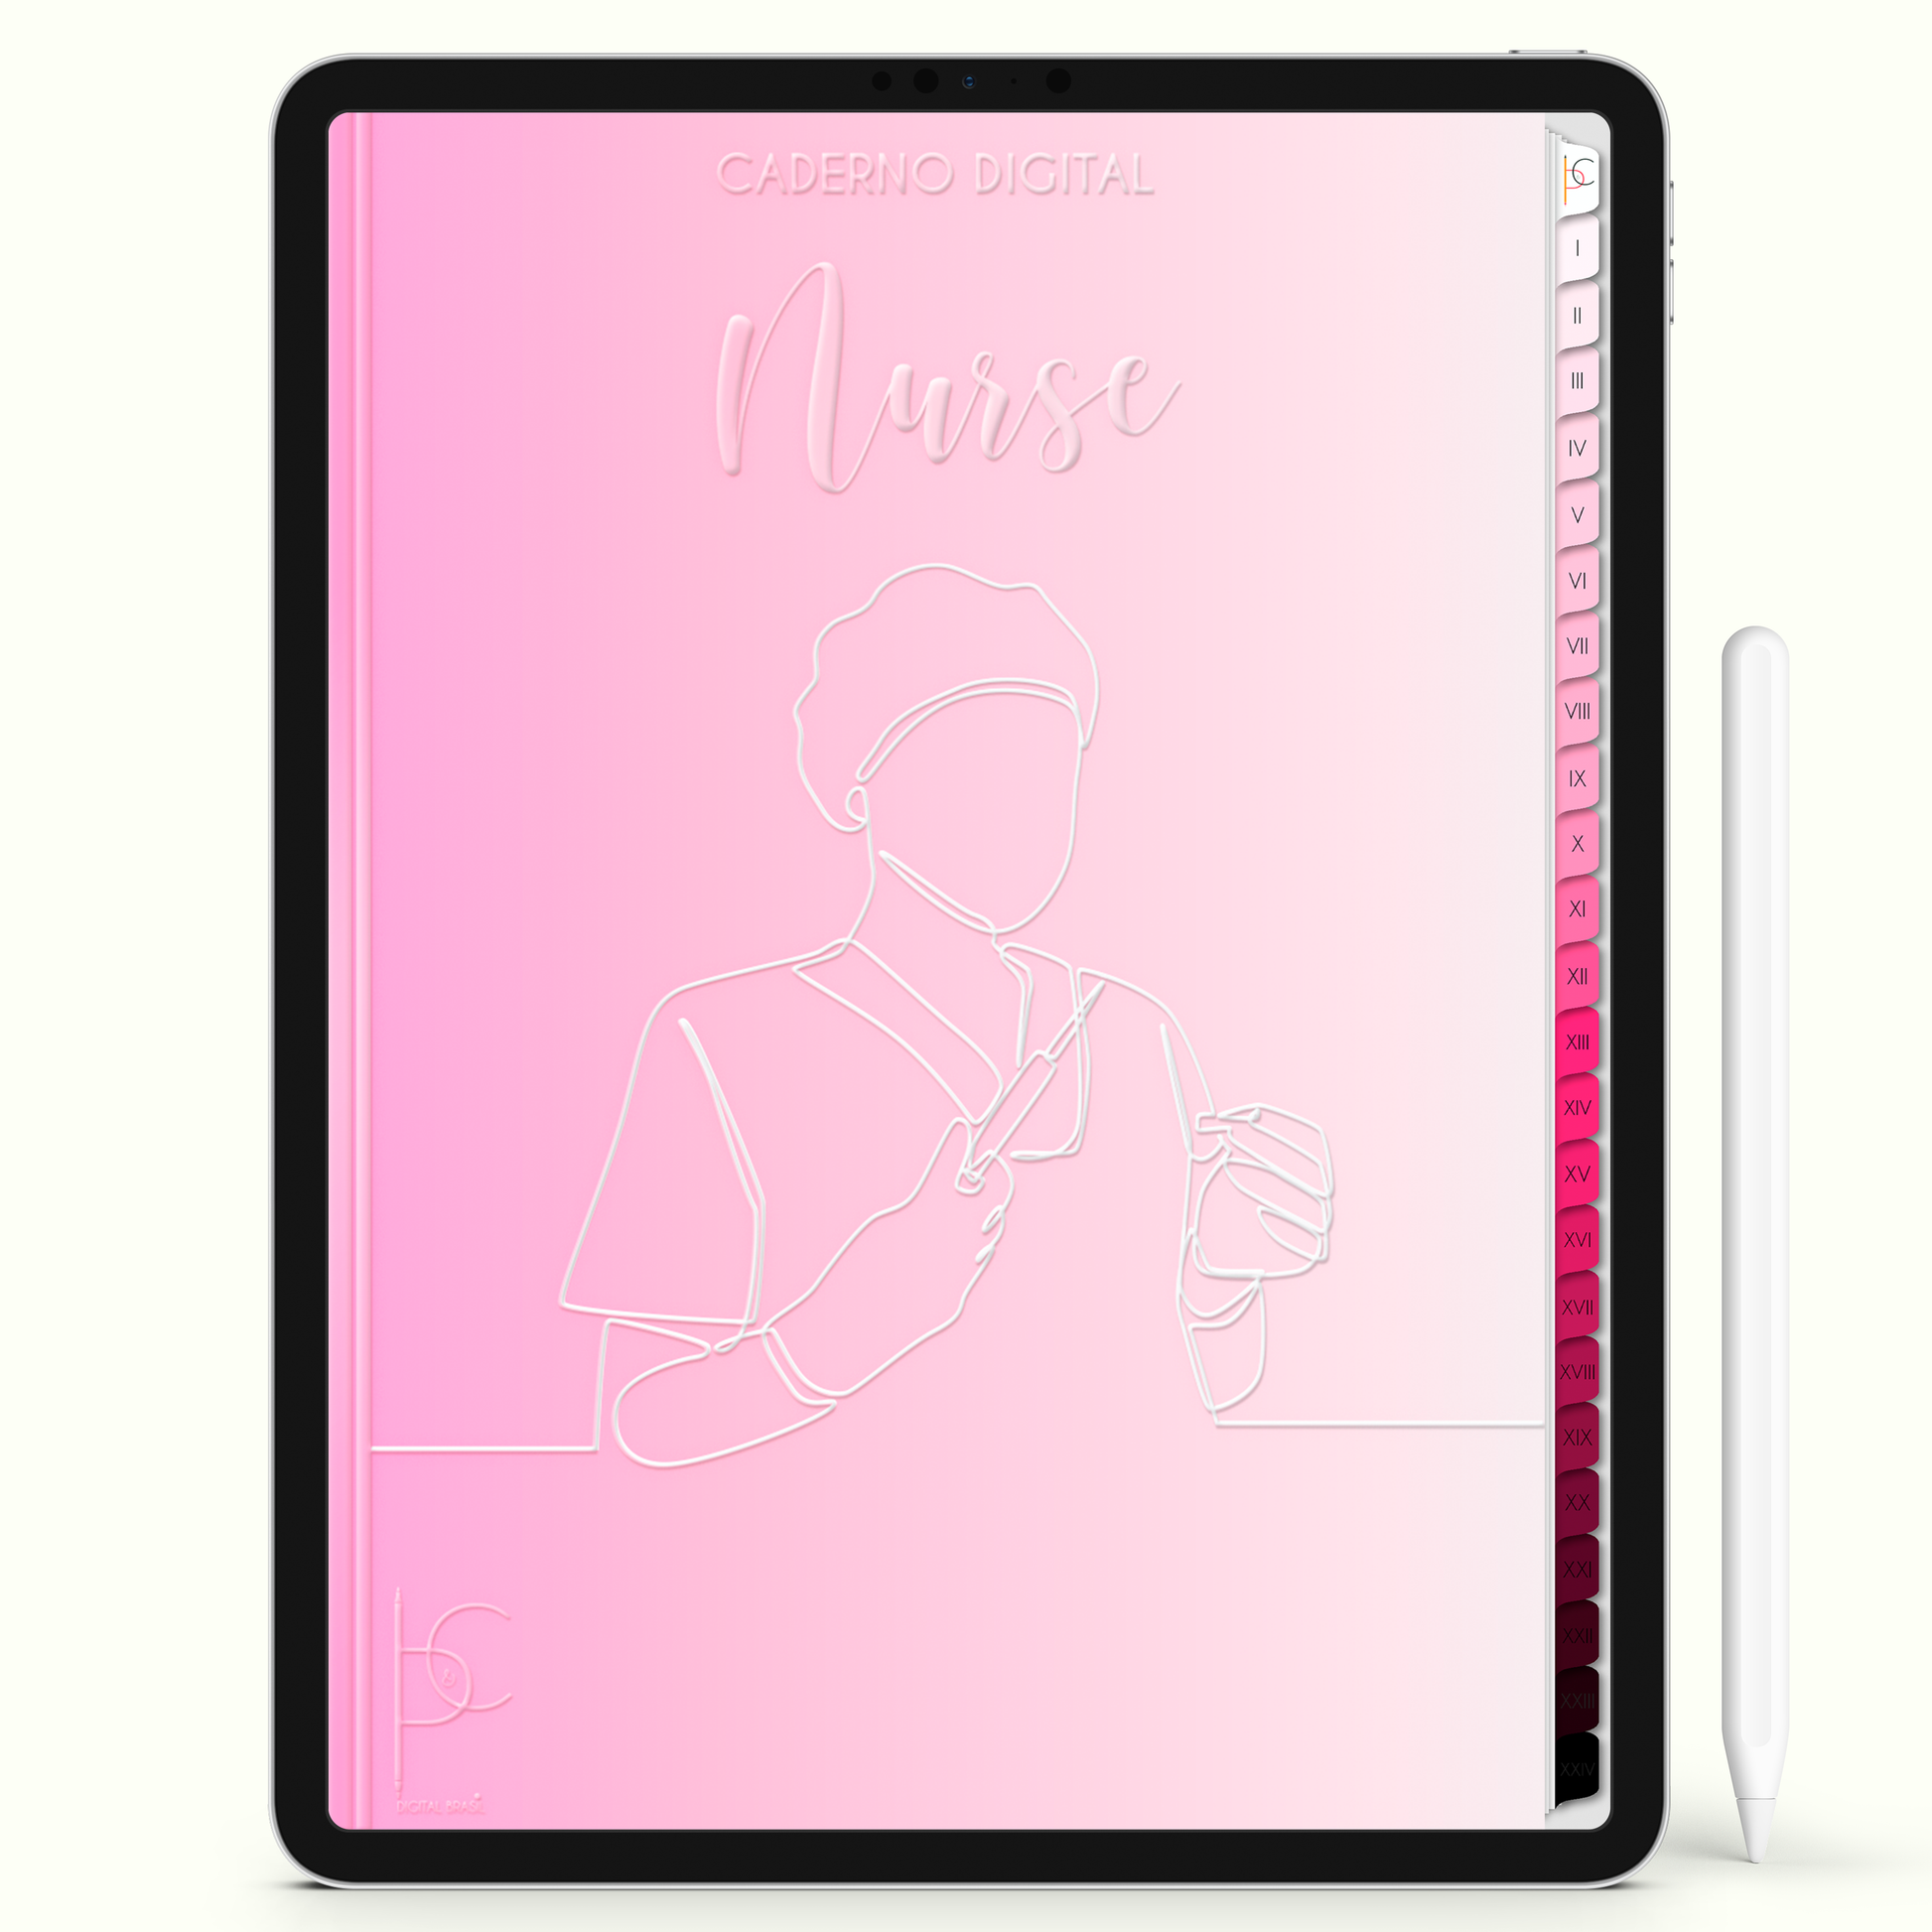 Caderno Digital Blush Eu Escolhi Ser Enfermeira 24 Matérias • iPad e Tablet Android • Download instantâneo • Sustentável